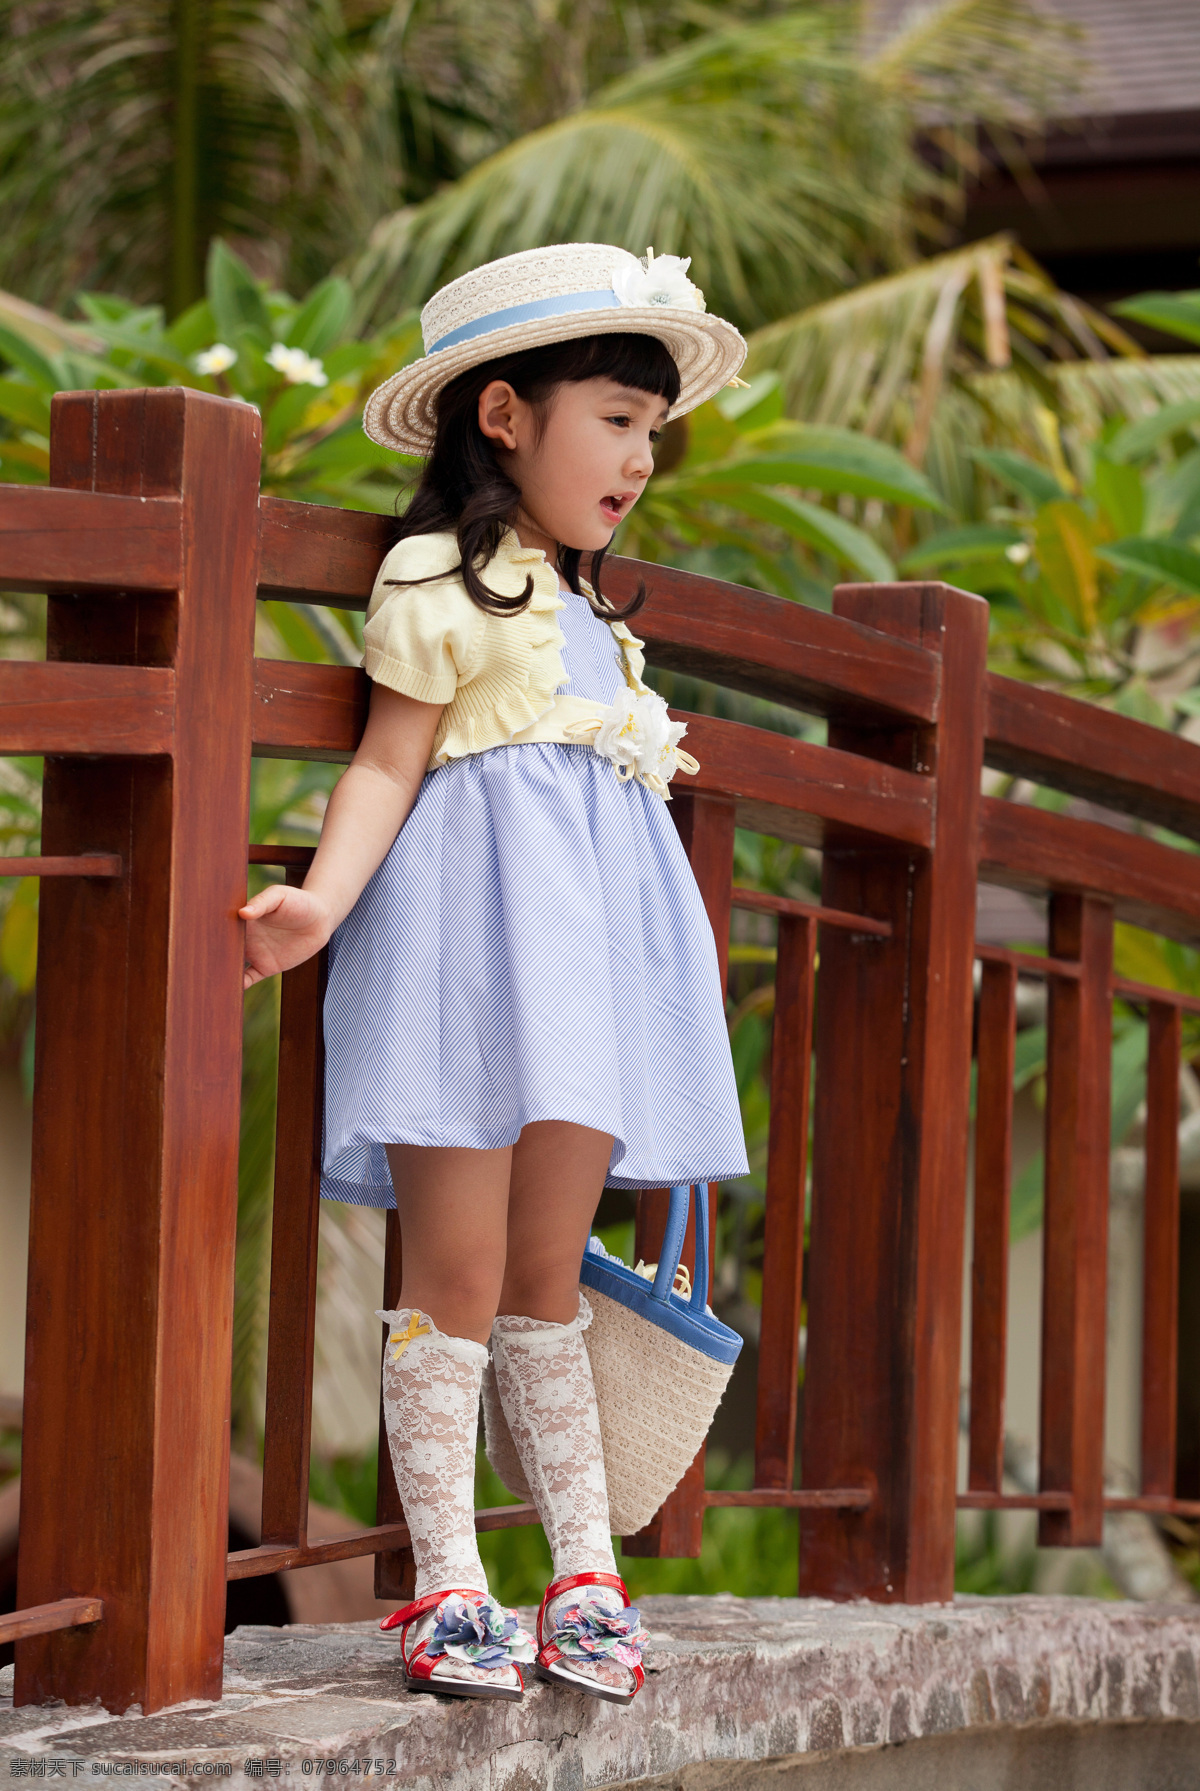 穿 裙子 小女孩 韩国 小 木马 童装 戴帽子 可爱 儿童幼儿 人物图库